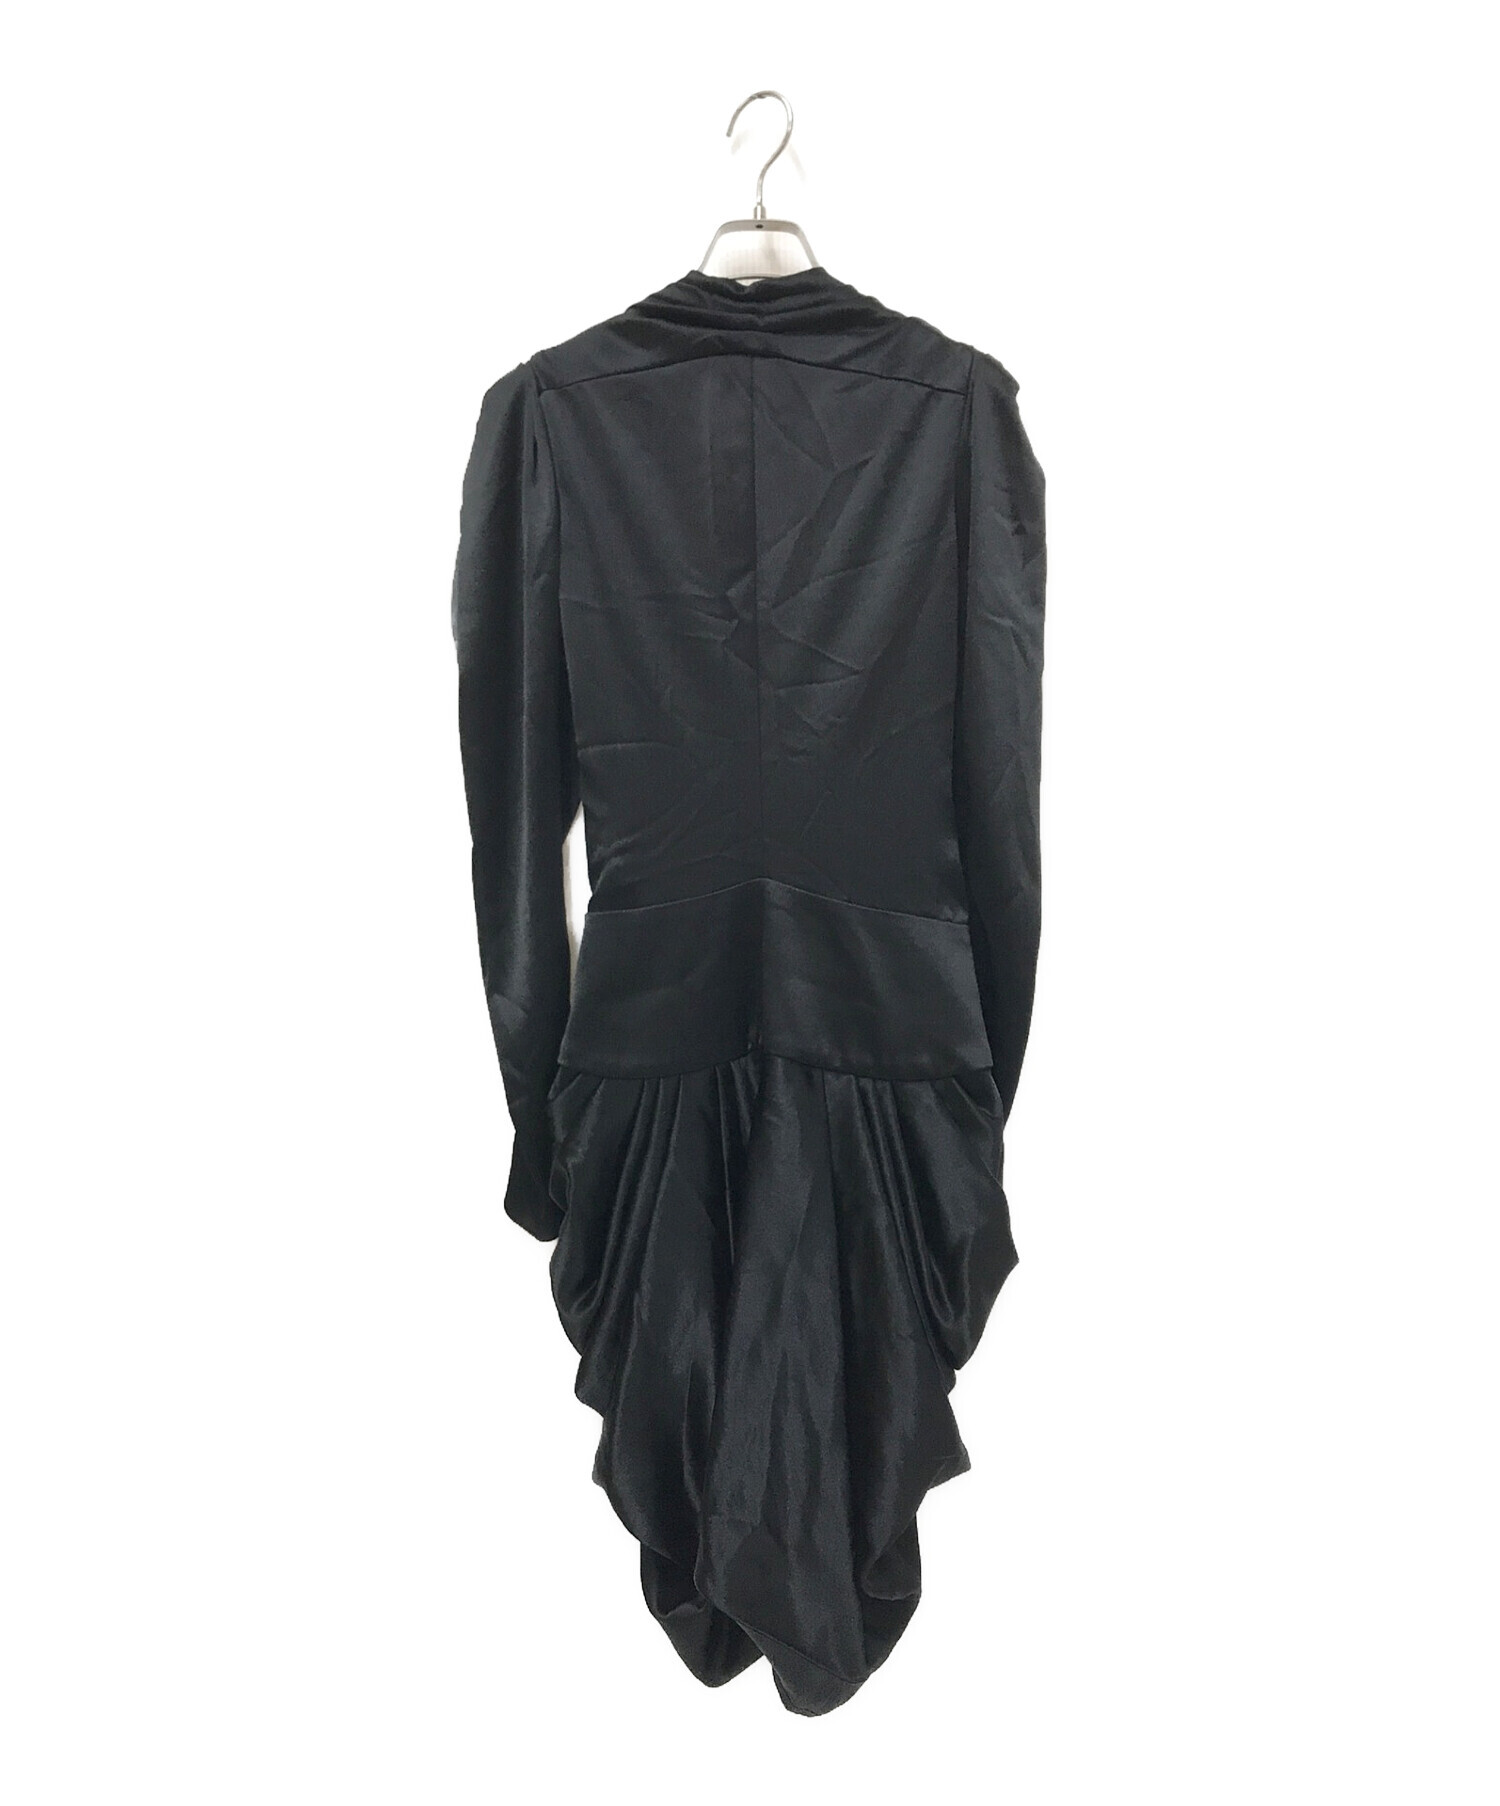 美品 バレンシアガ BALENCIAGA BLACK DRESS ワンピース ドレス ロングスリーブ Vネック トップス レディース 34(S相当) ブラック